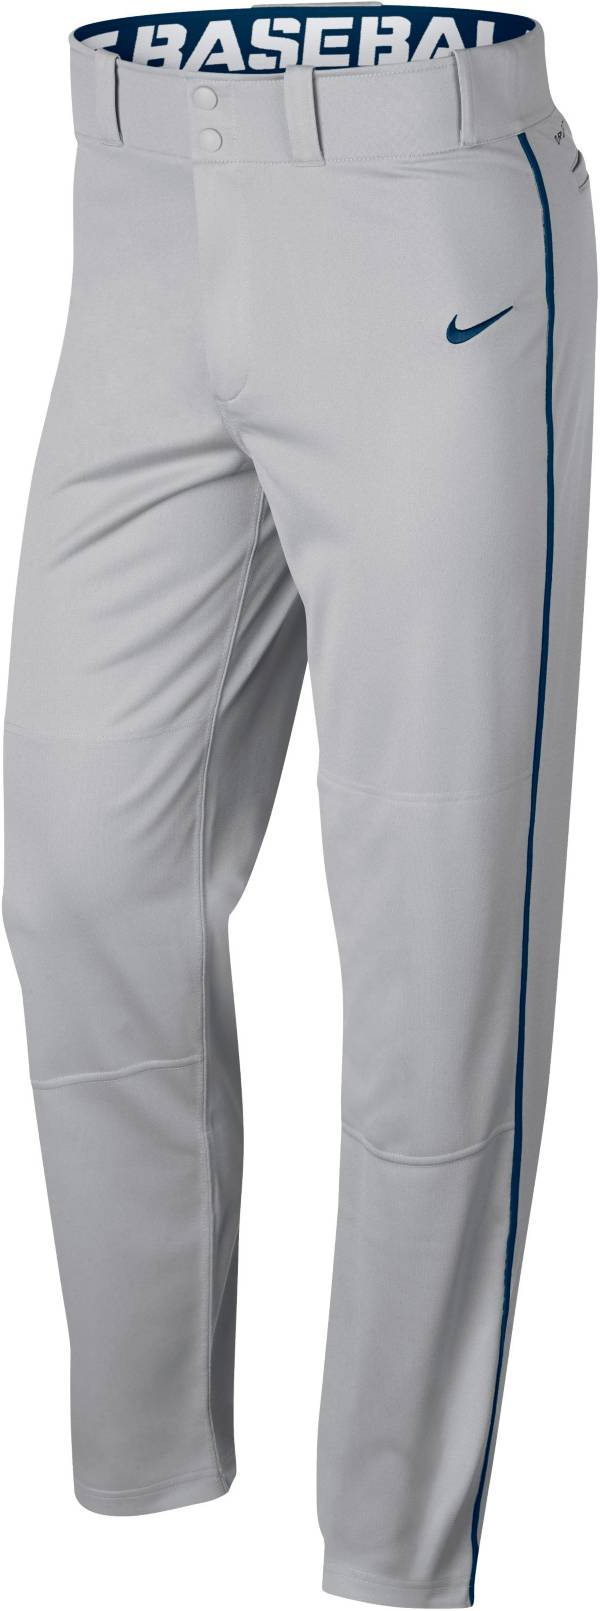 Nike Sportswear SwooshWomen's Pants (Plus Size) - Asport